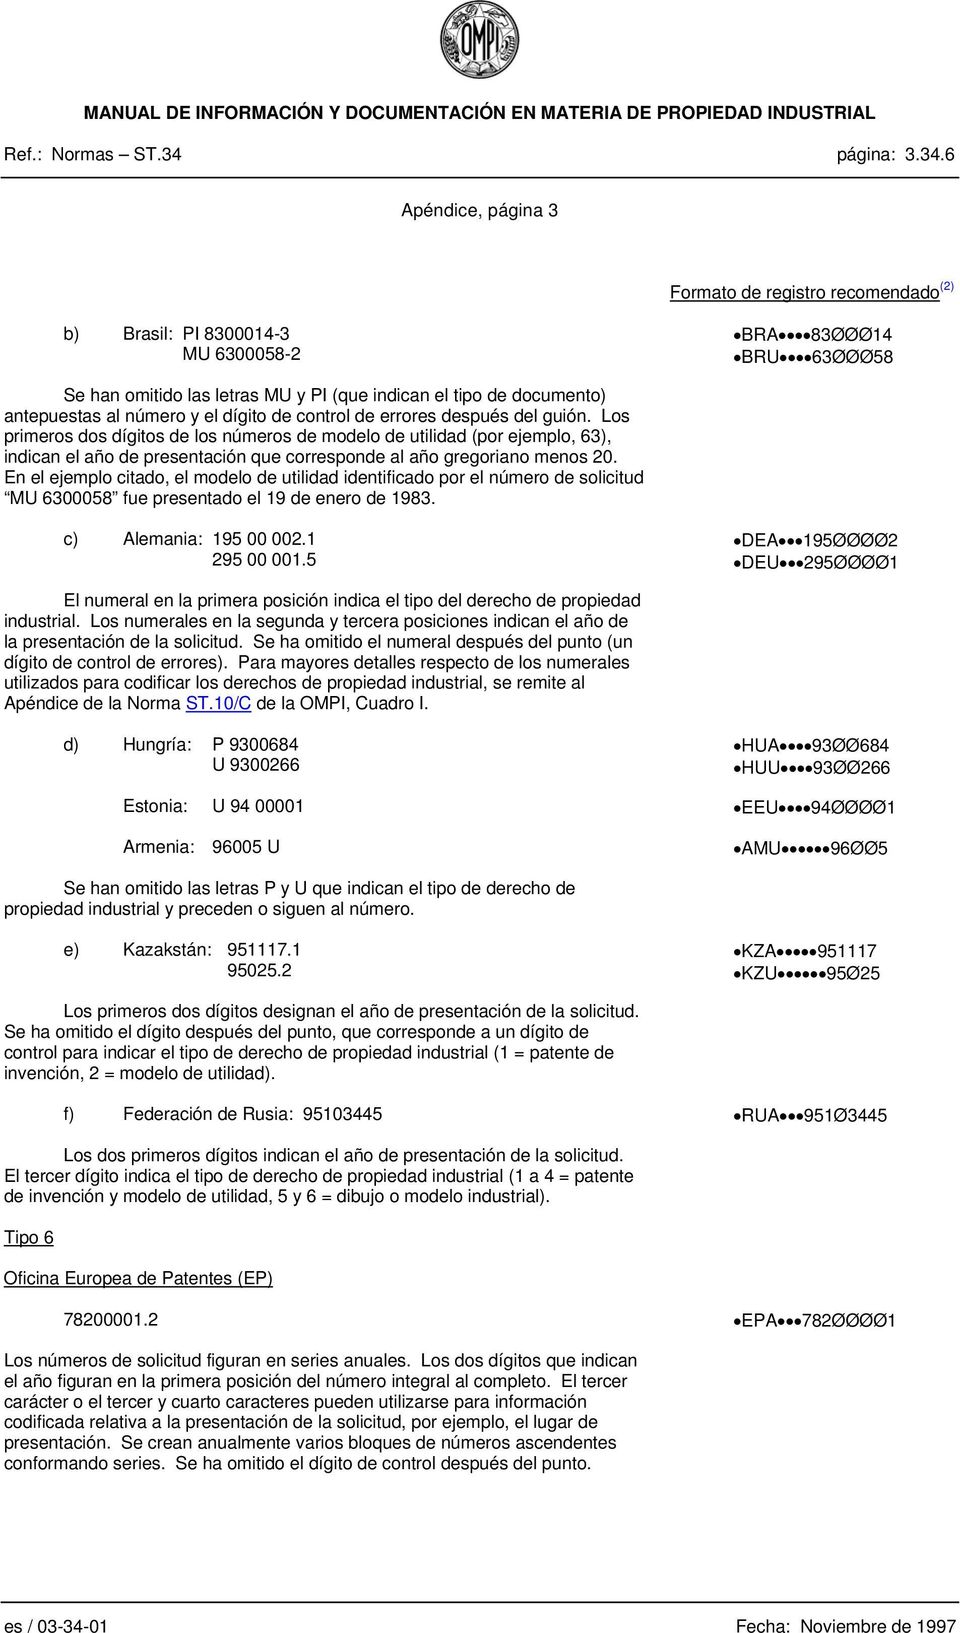 6 Apéndice, página 3 b) Brasil: PI 8300014-3 MU 6300058-2 BRA 83ØØØ14 BRU 63ØØØ58 Se han omitido las letras MU y PI (que indican el tipo de documento) antepuestas al número y el dígito de control de